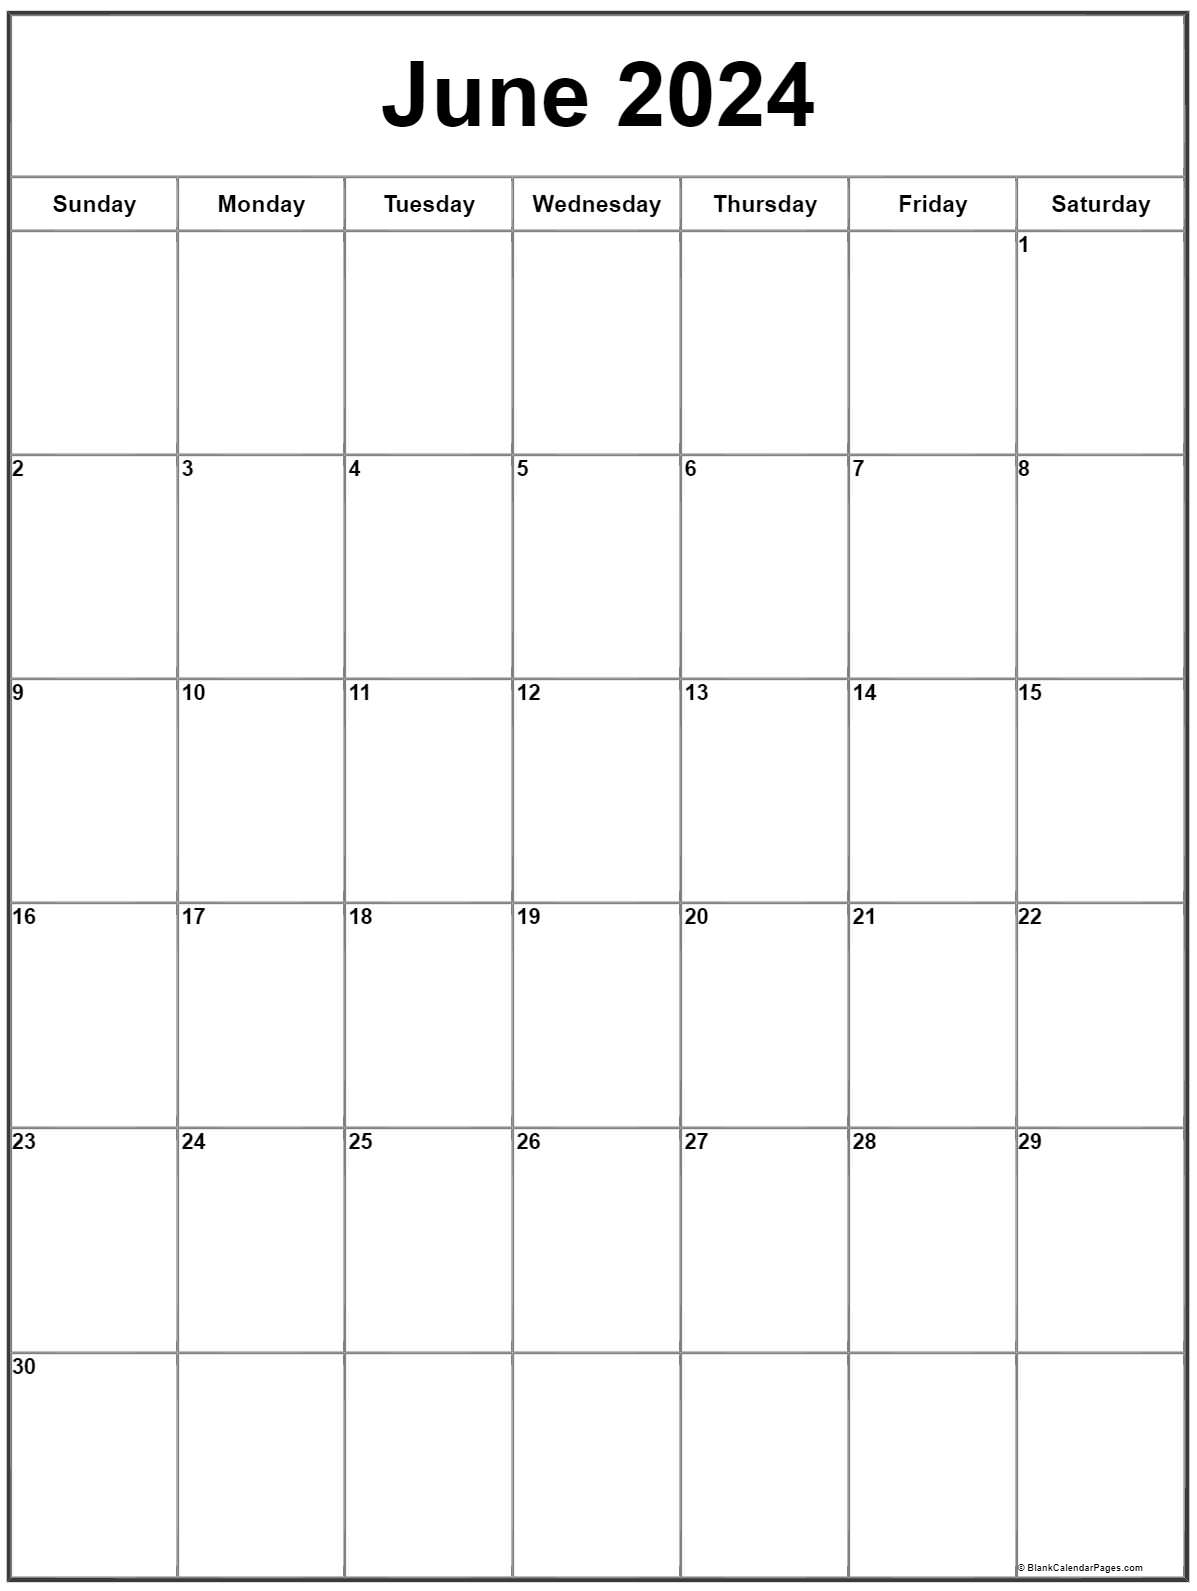 June 2023 Calendar Free Printable Calendar June 2023 Calendar Free Printable Calendar Free